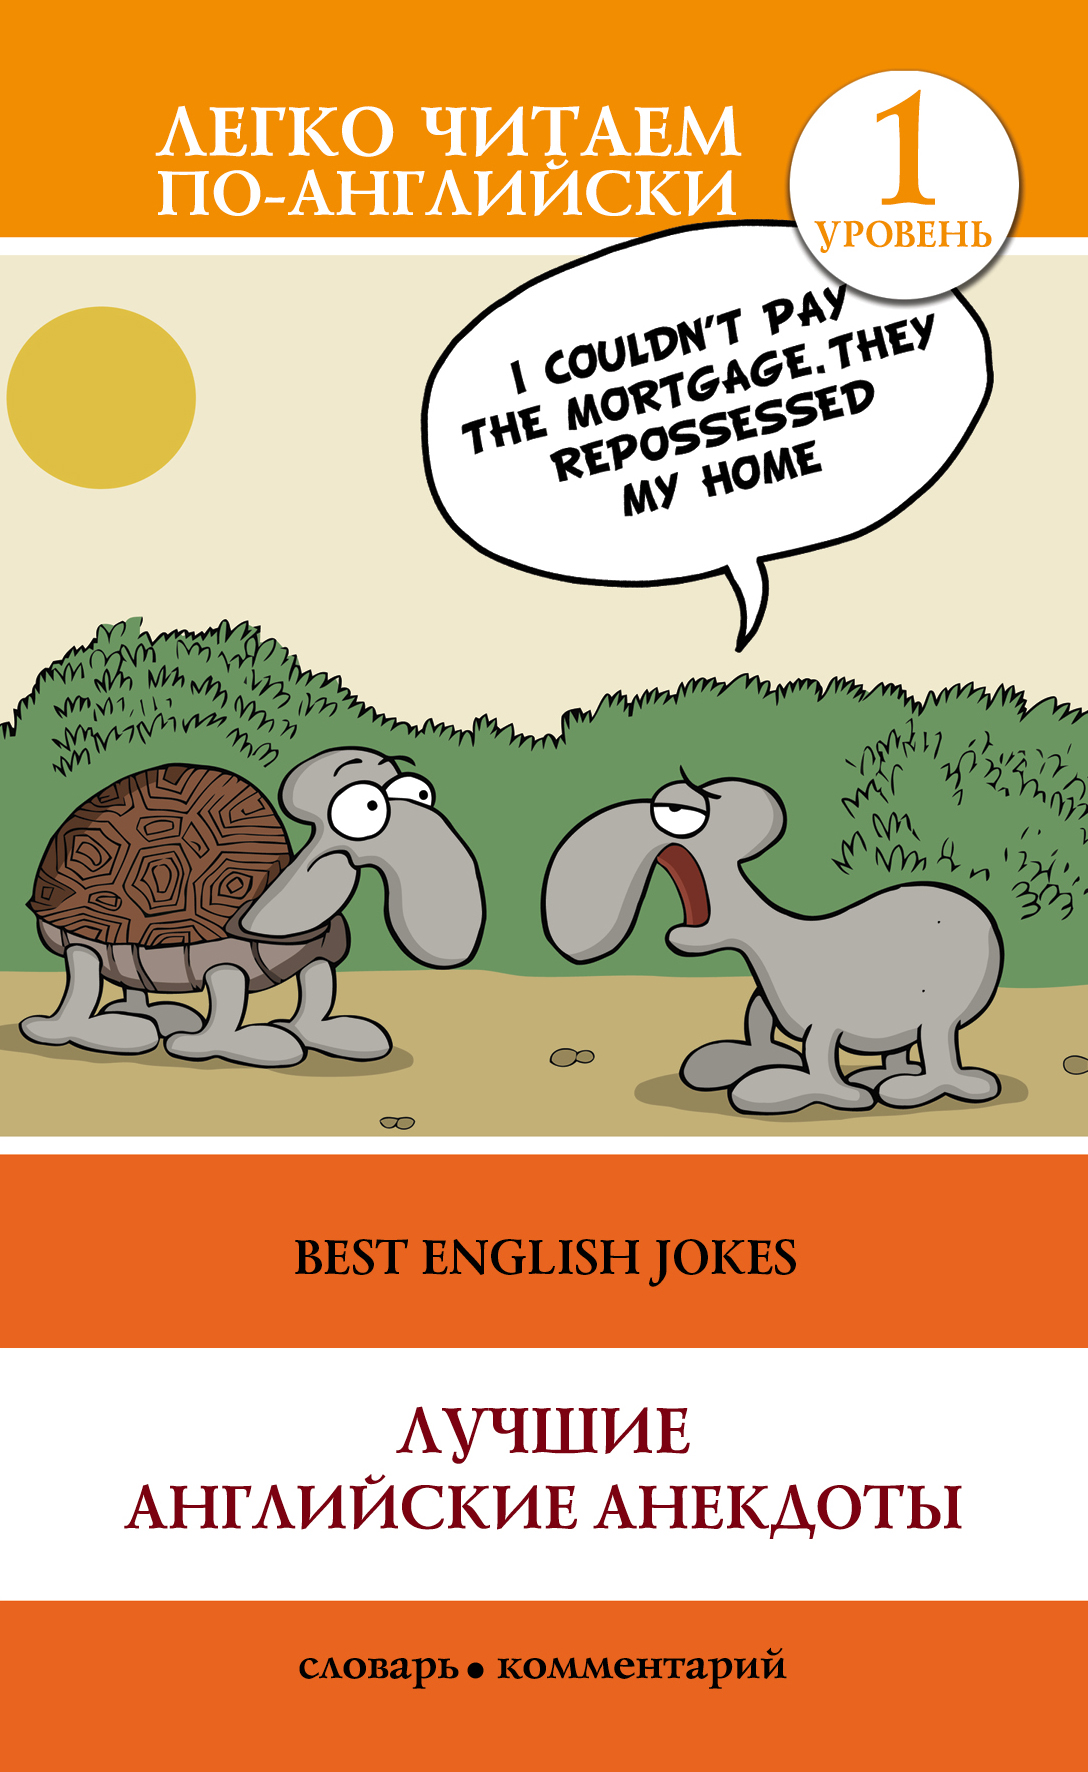 Языковые шутки